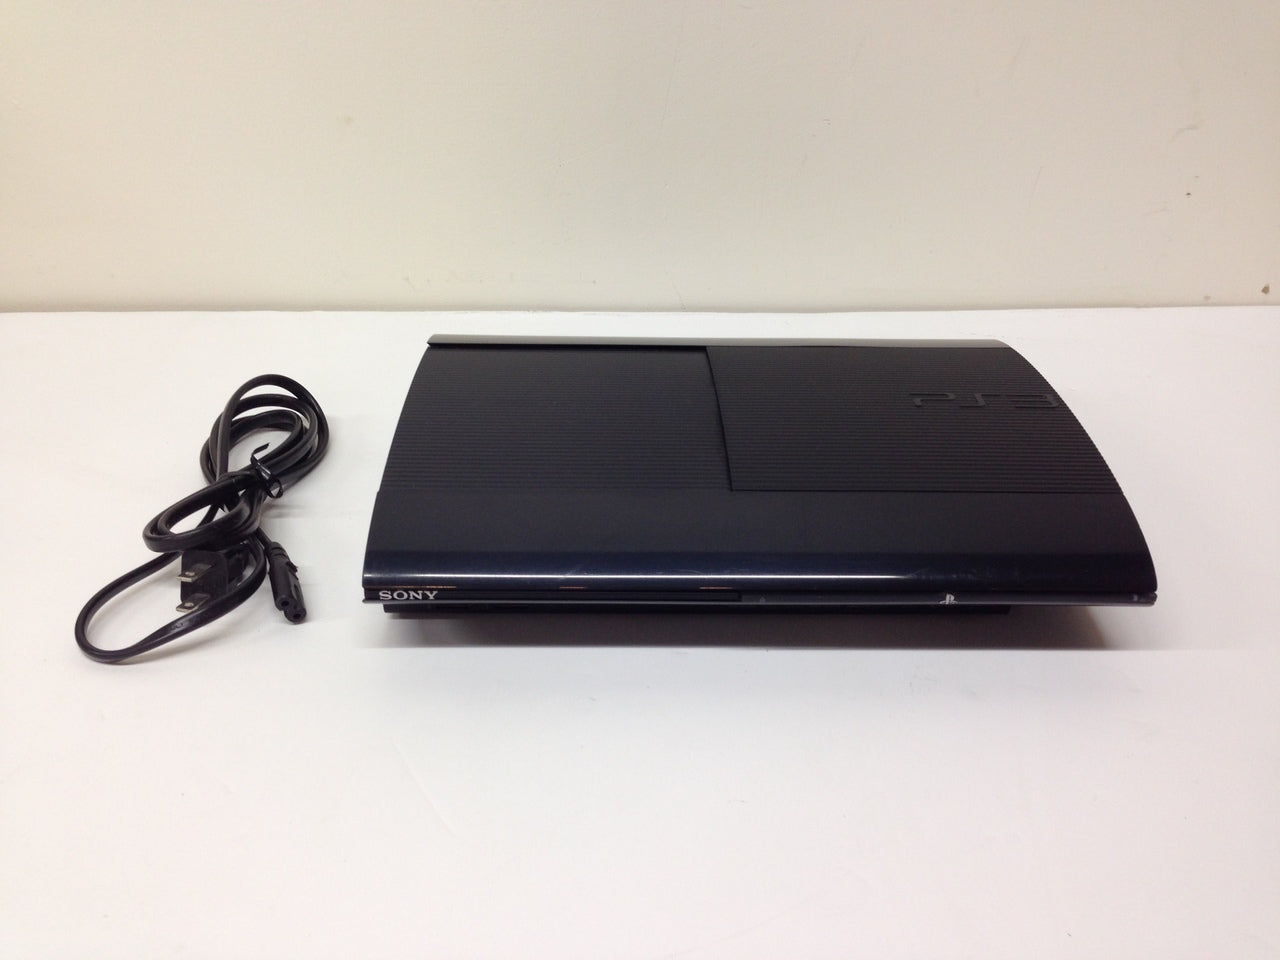 Sony PlayStation 3 Super Slim PS3 250GB CECH-4001B Black Console